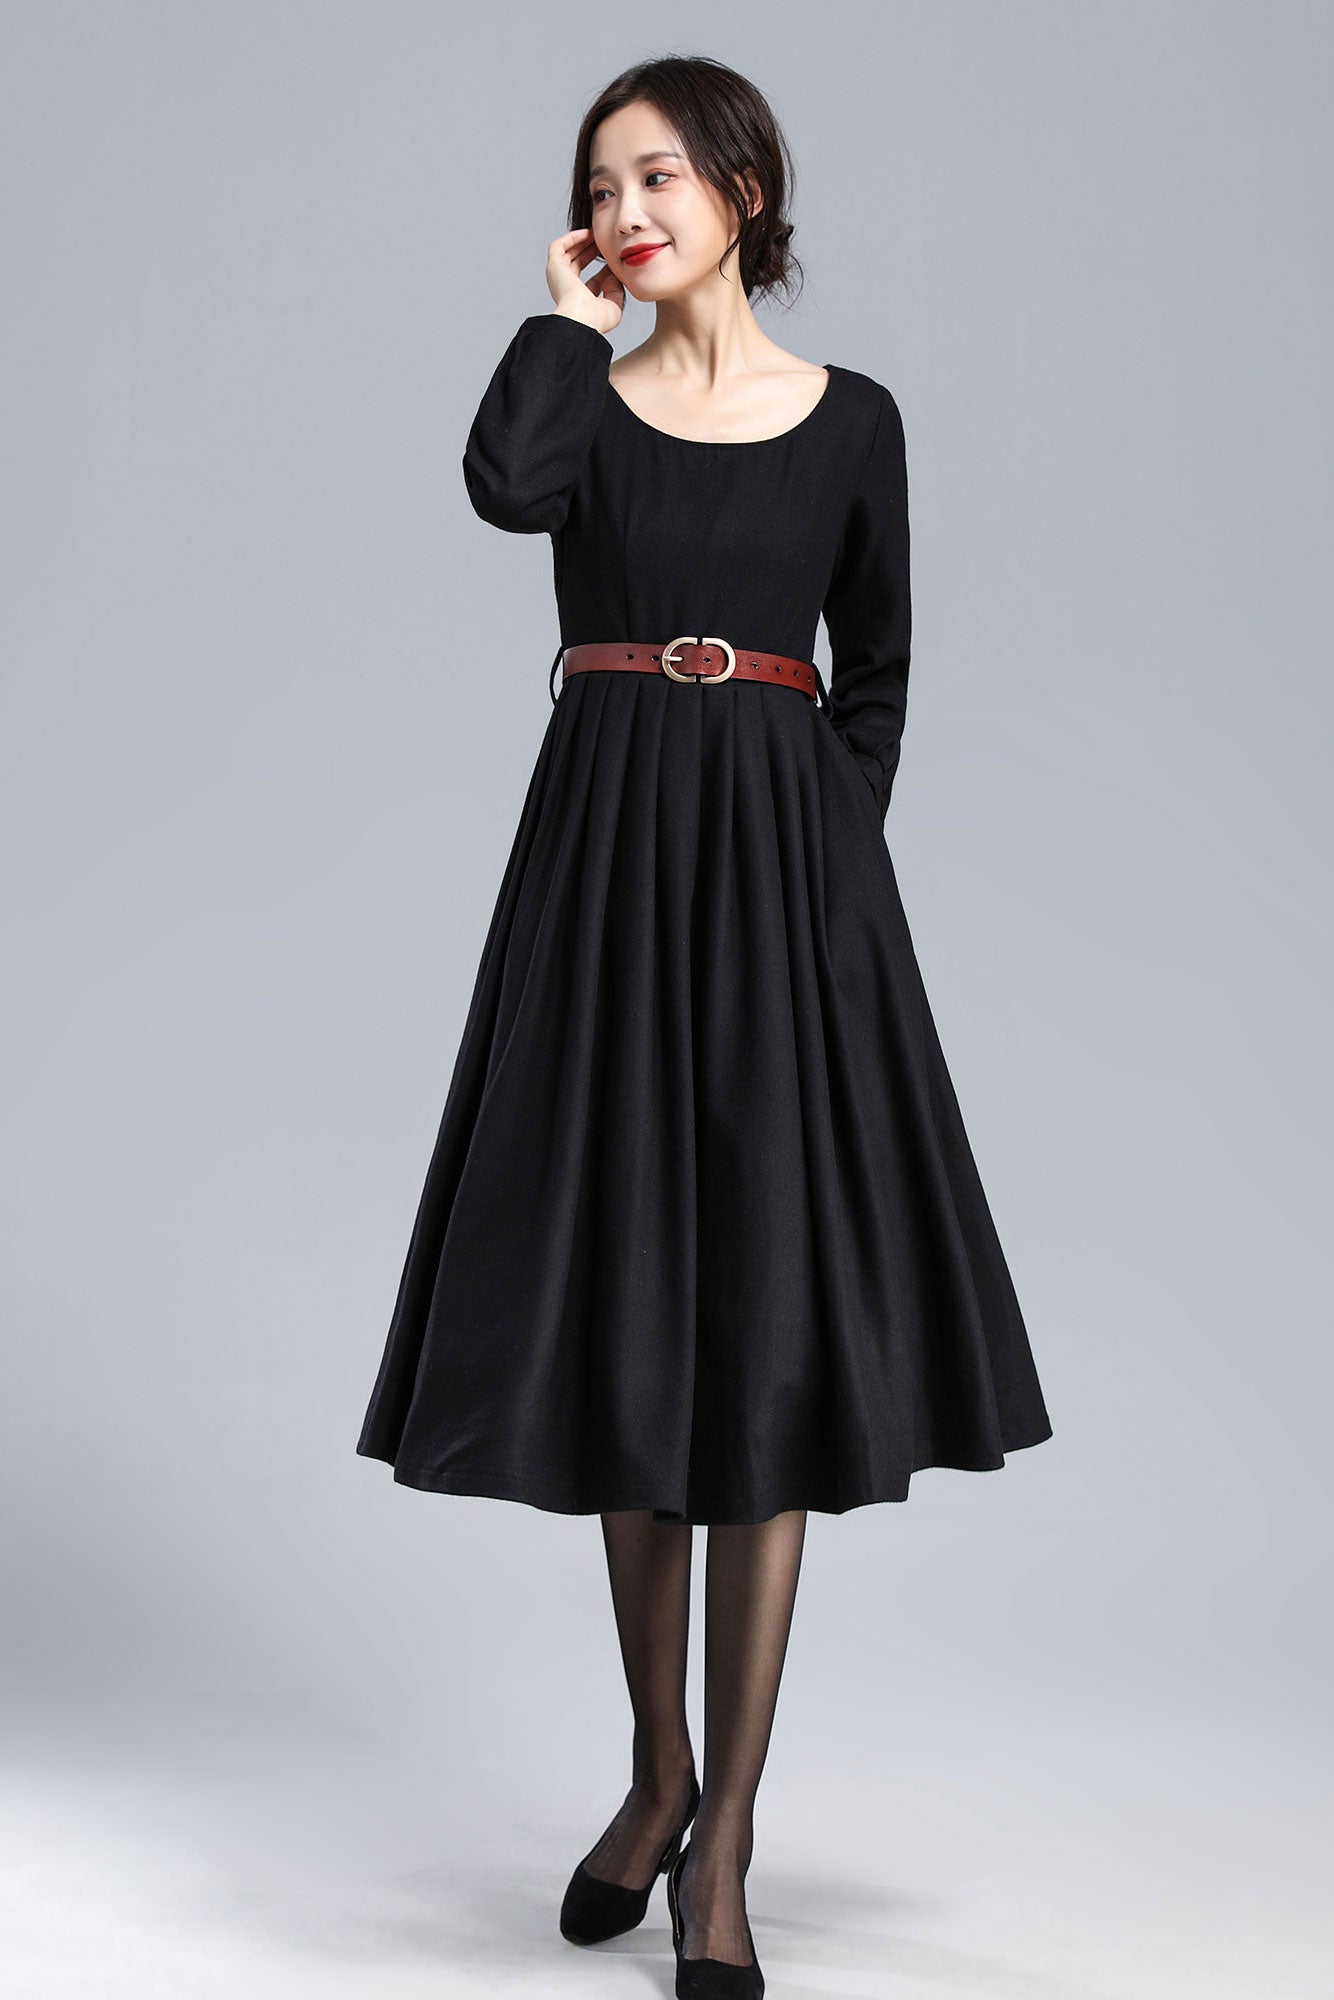 Pleated Dress, Mod Dress 3179